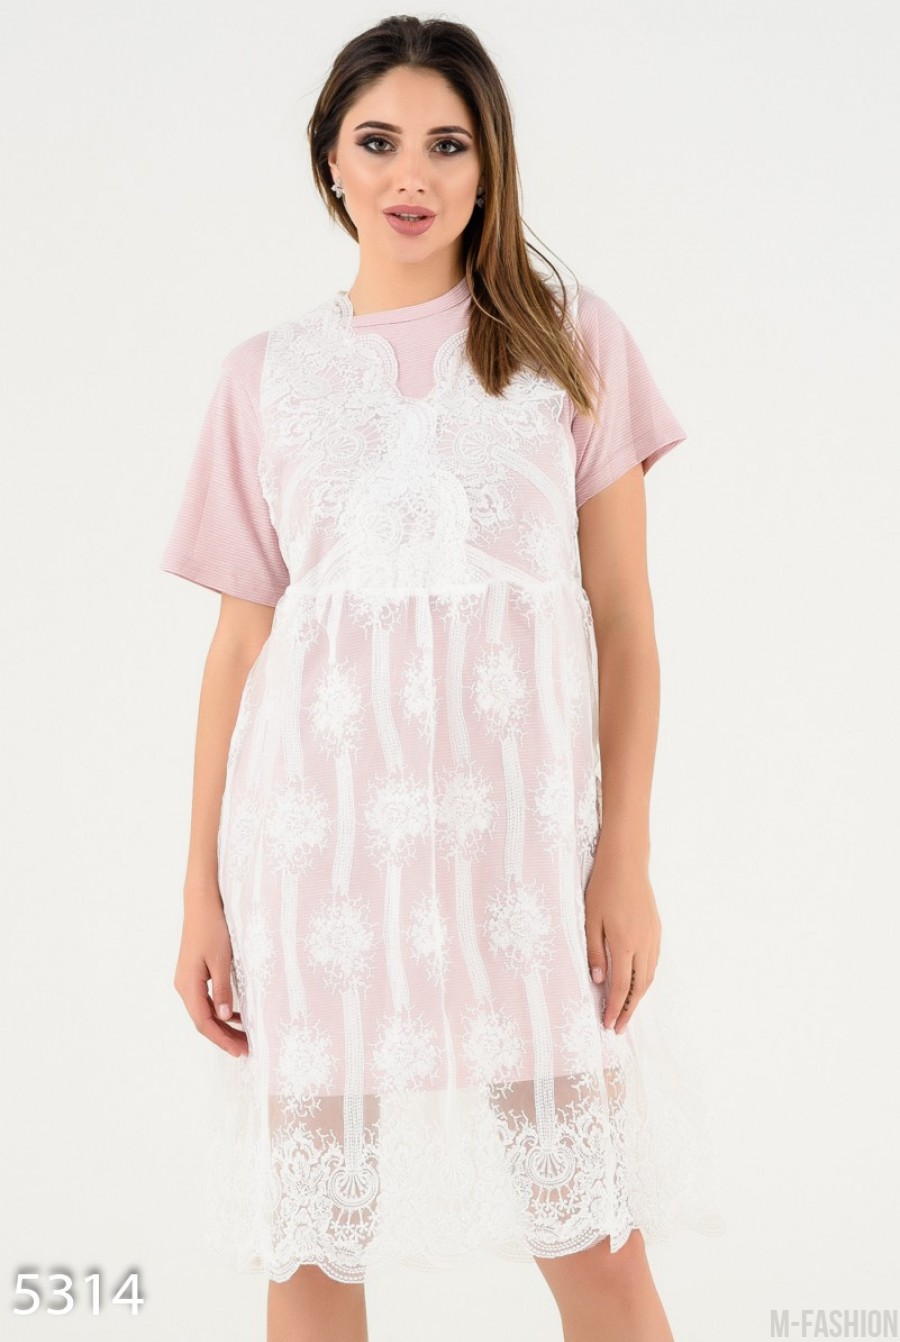 Сиреневое платье-футболка с верхним кружевным платьицем - Фото 1